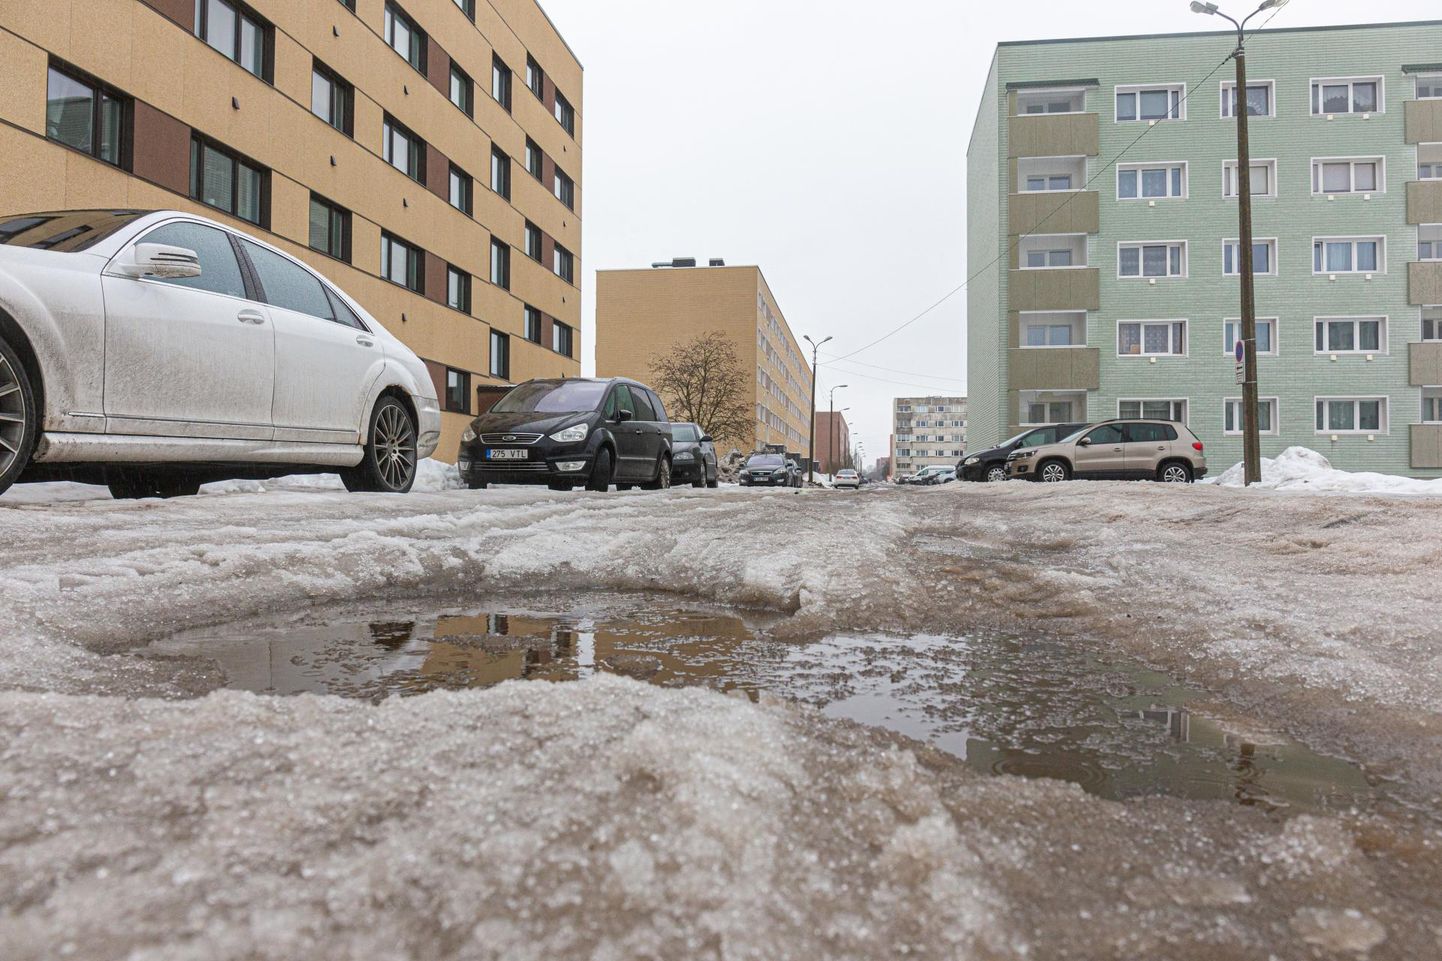 Viljandi tänavate seisukord on keeruline ning mitmel pool on jäässe tekkinud augud.